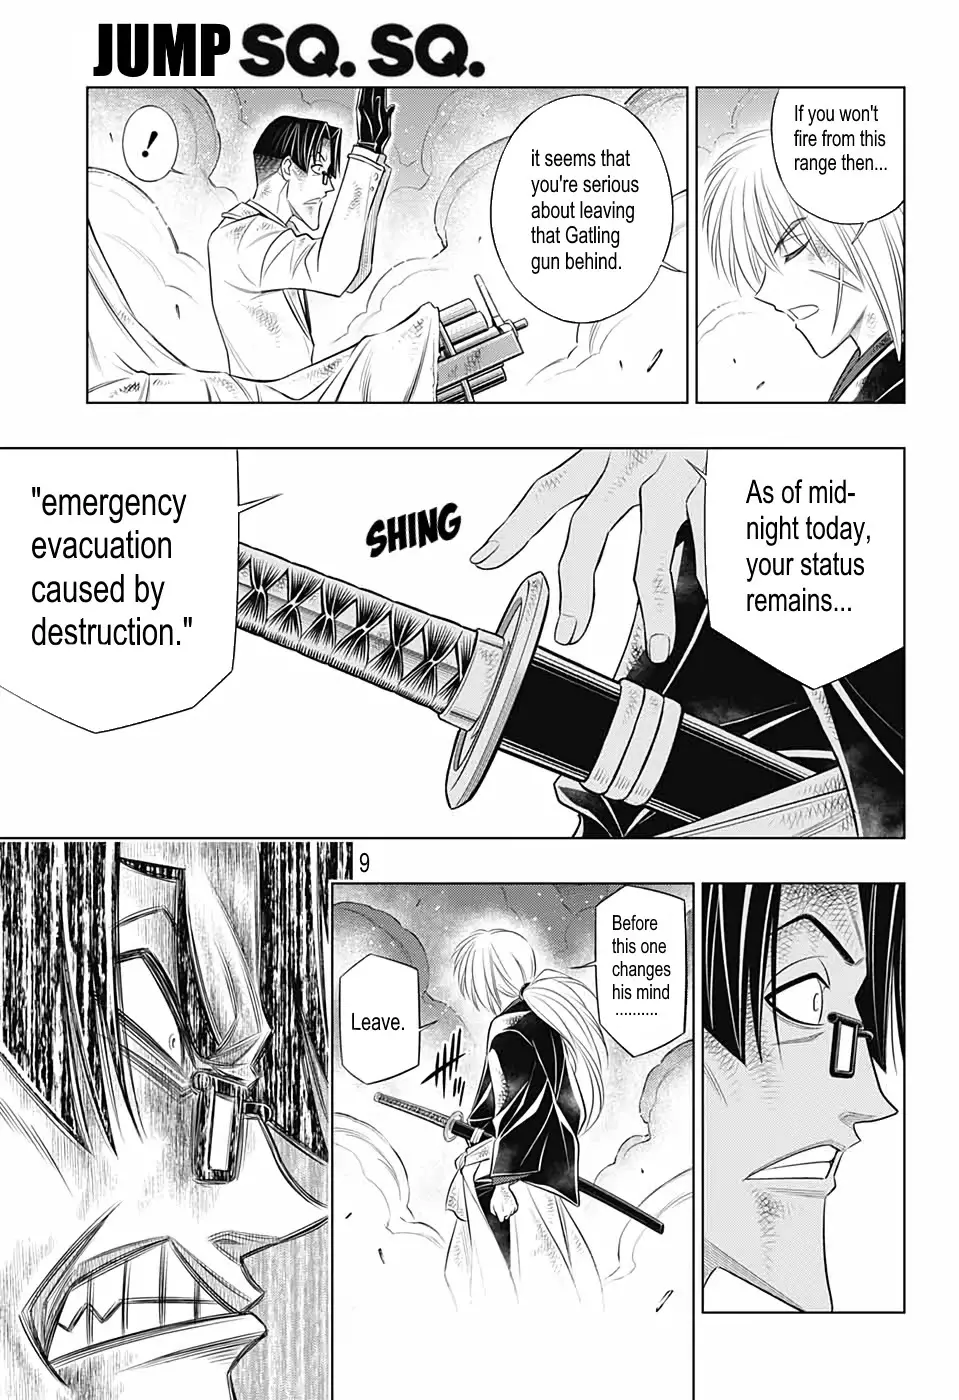 Rurouni Kenshin: Hokkaido Arc - 34 page 8